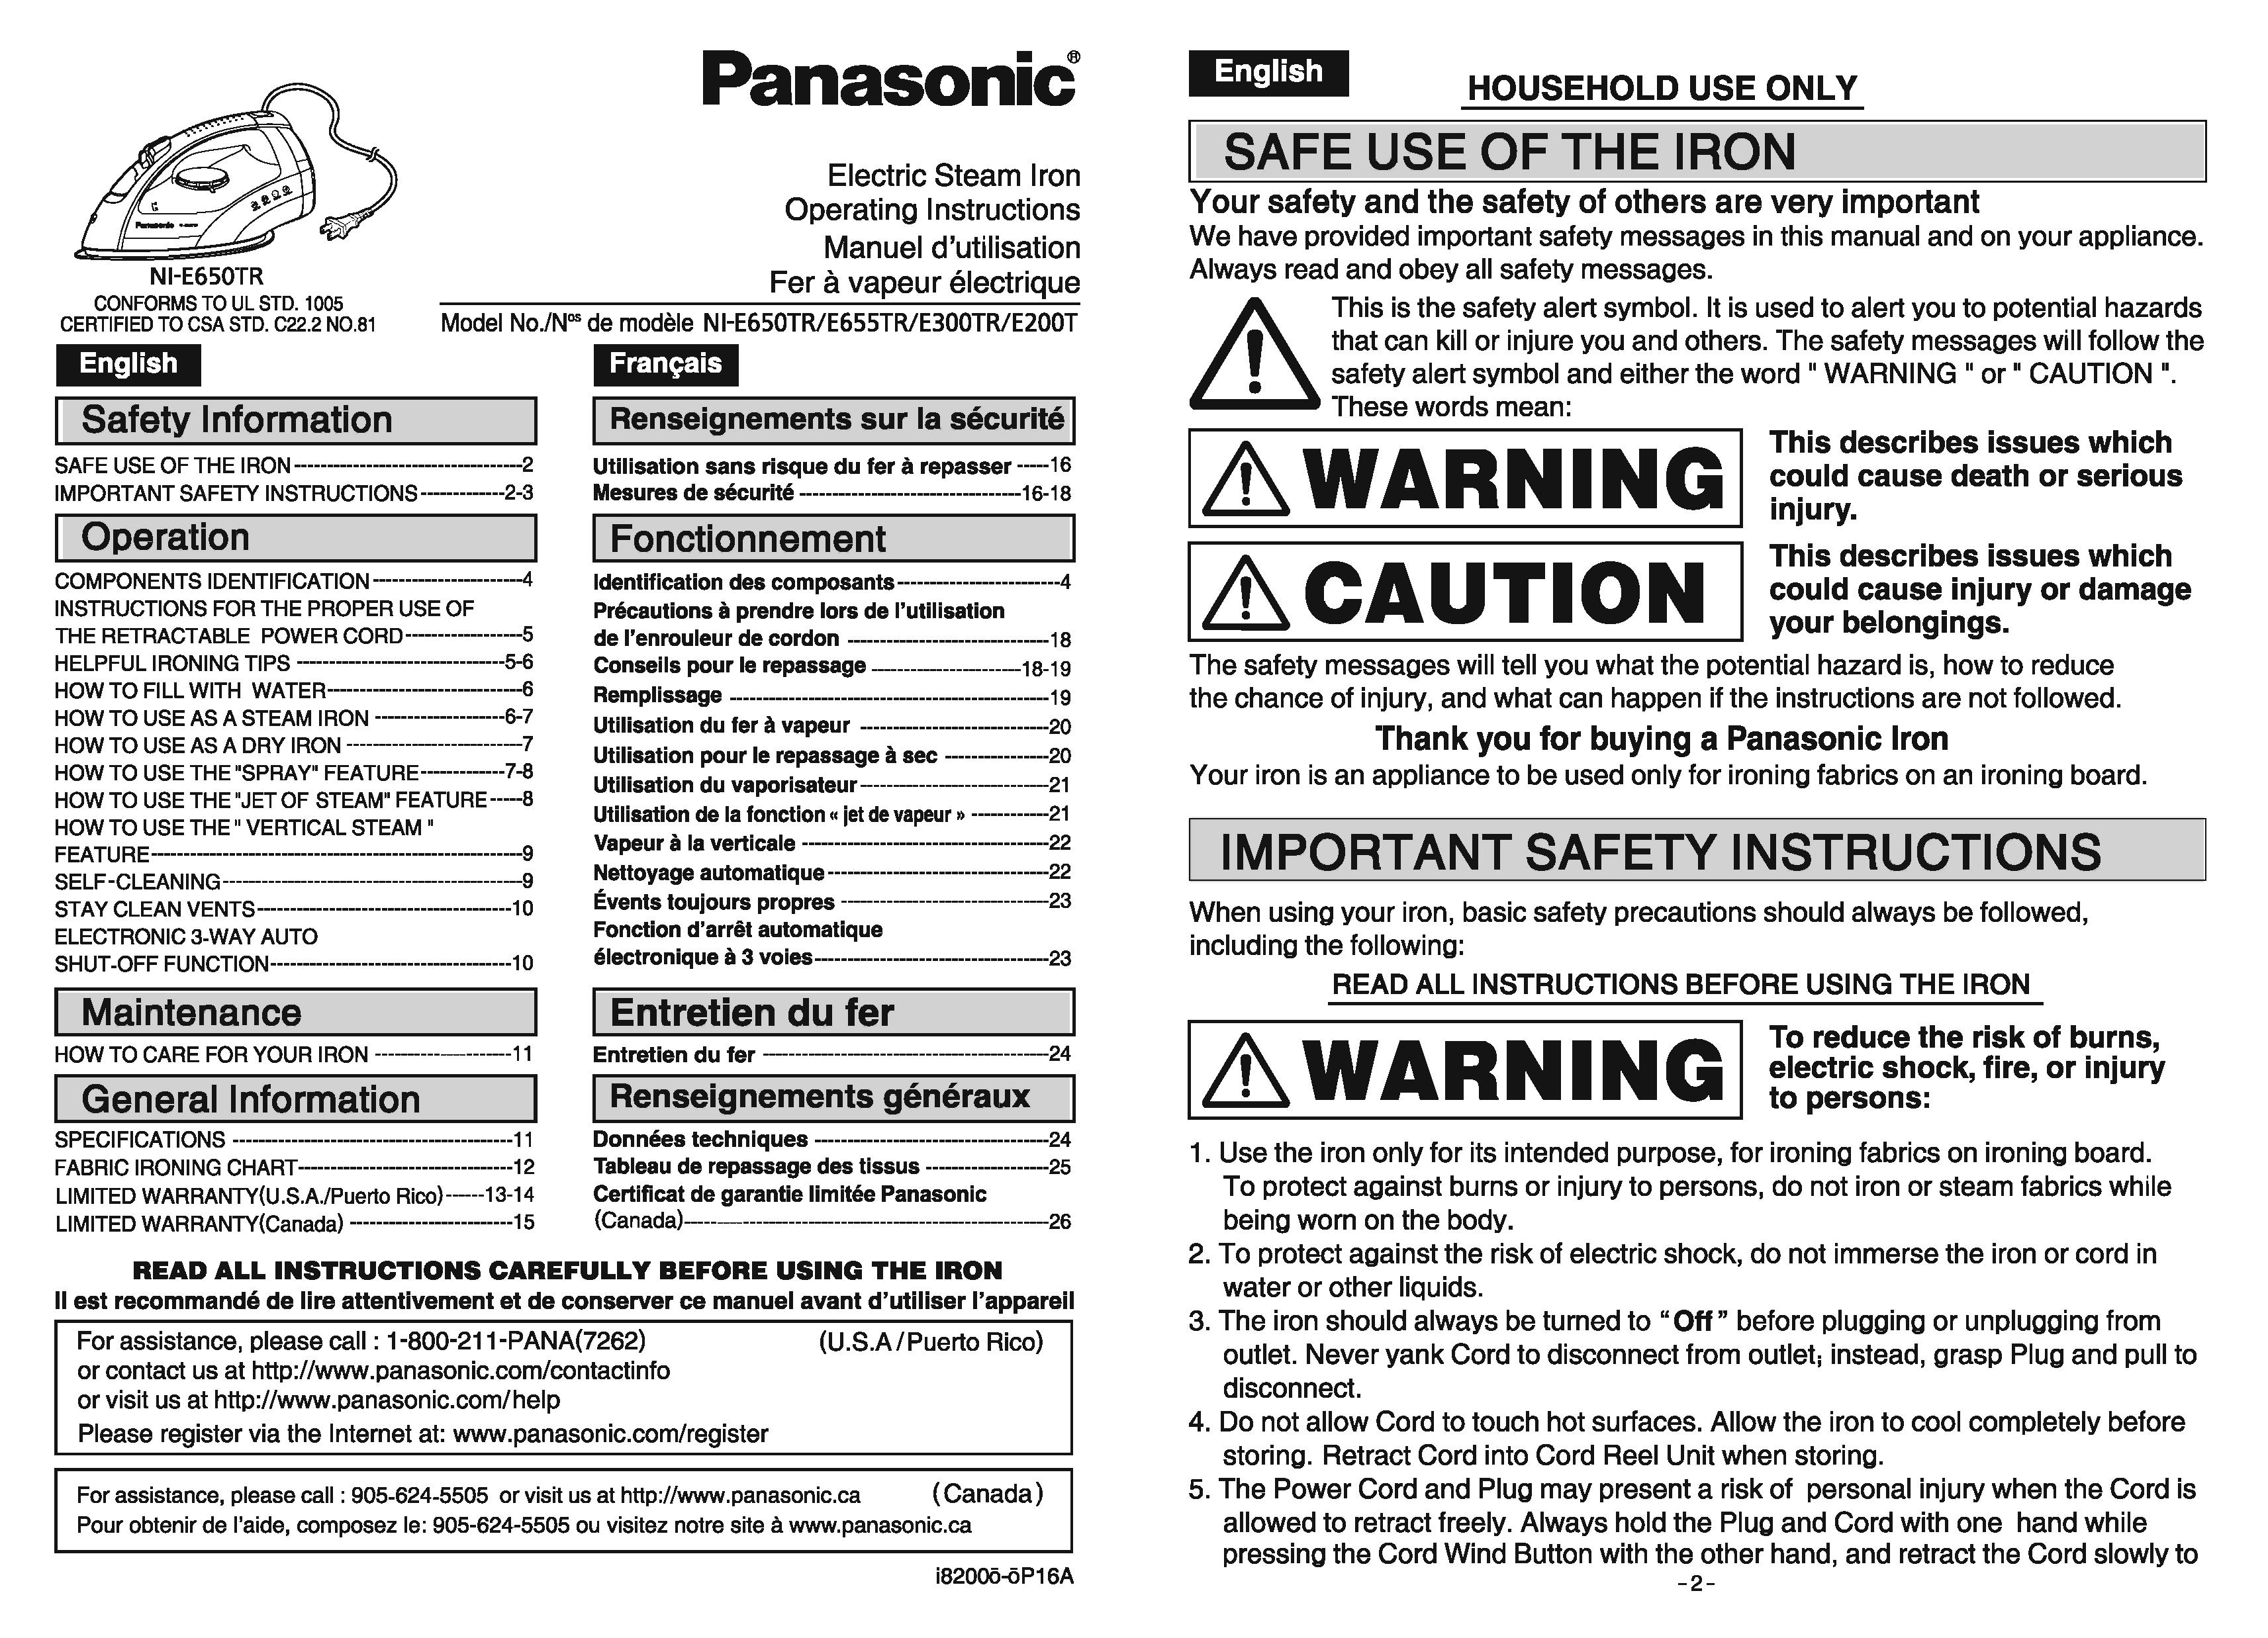 Panasonic NIE650TR Iron User Manual